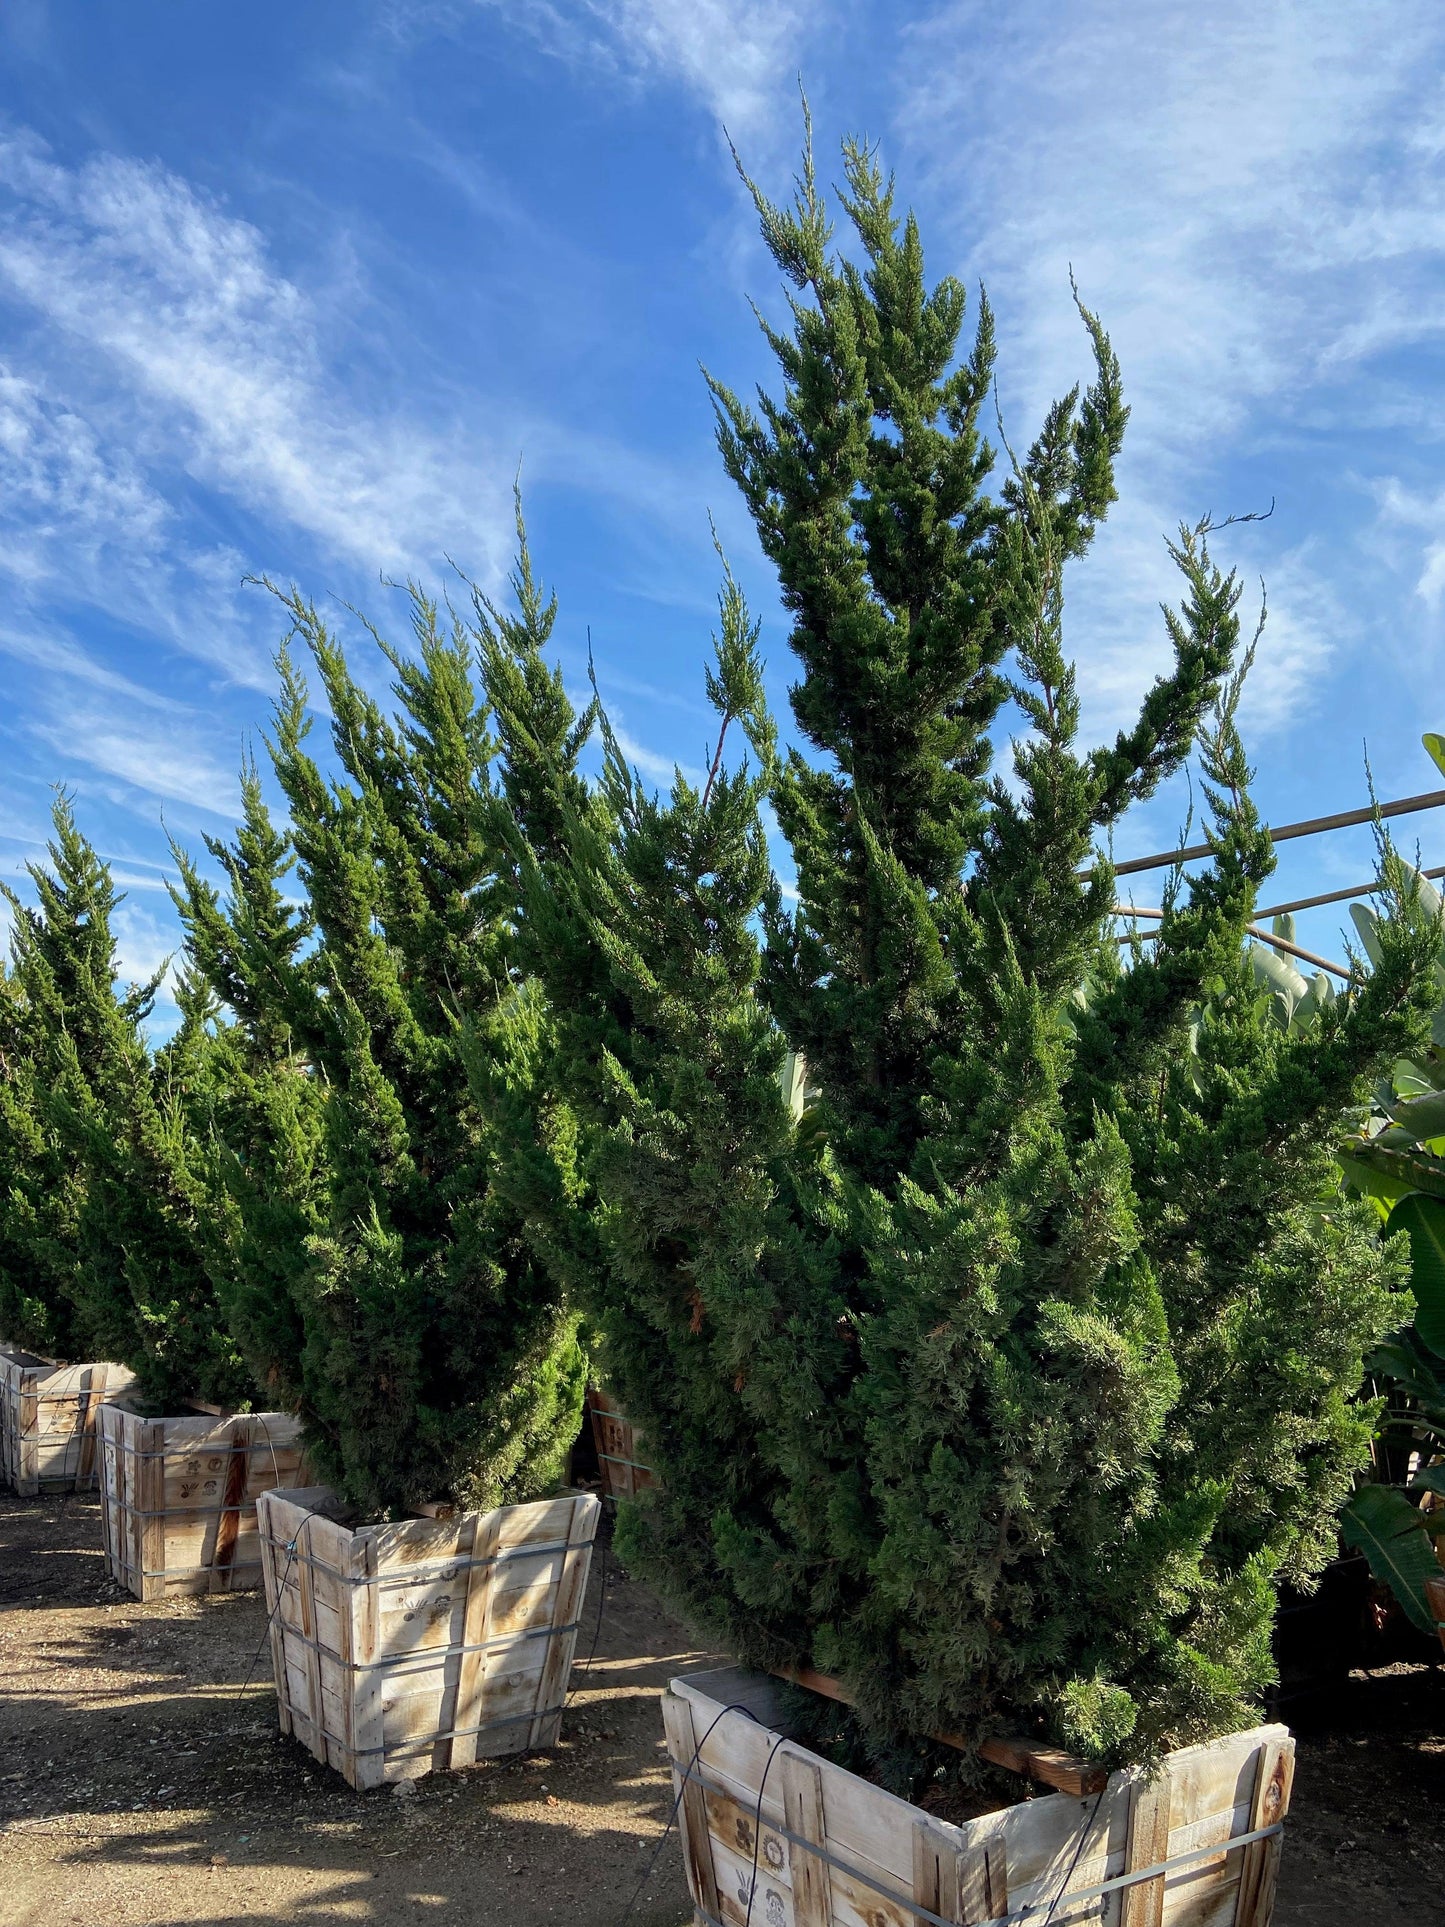 Hollywood Juniper - Juniperus chinensis 'Torulosa’ - Pulled Nursery